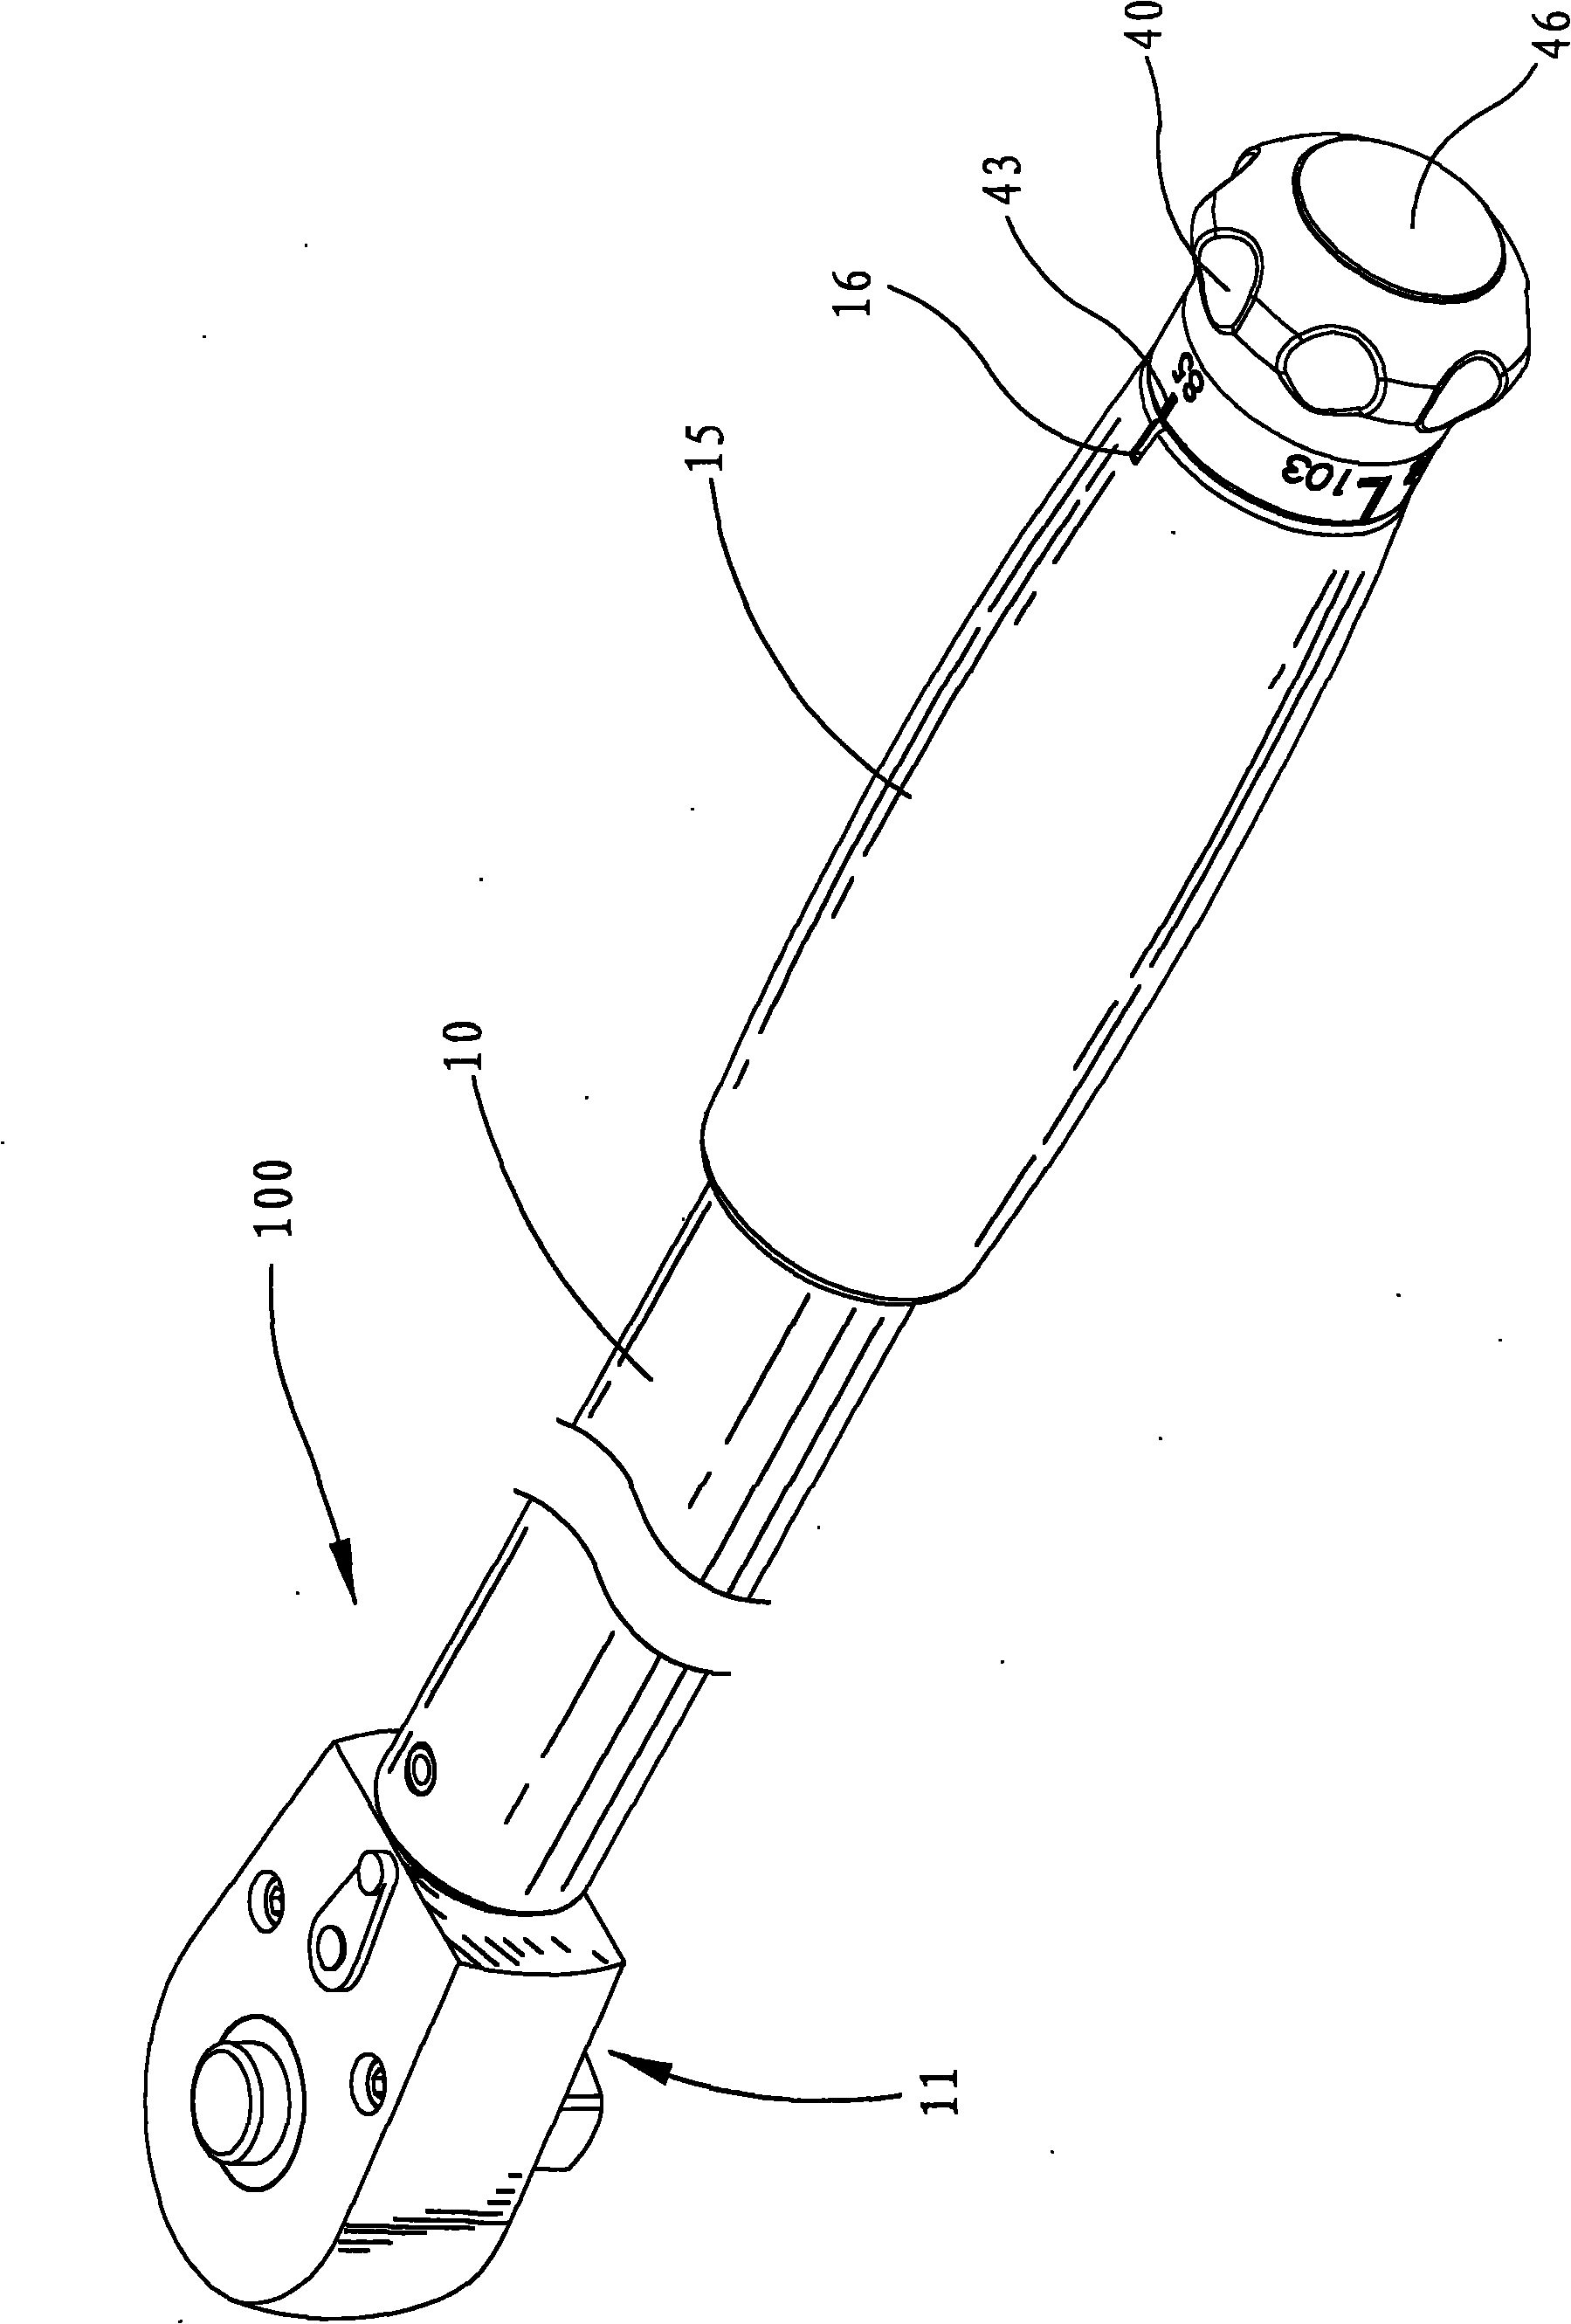 Torsion adjusting and locking mechanism of torsion tool